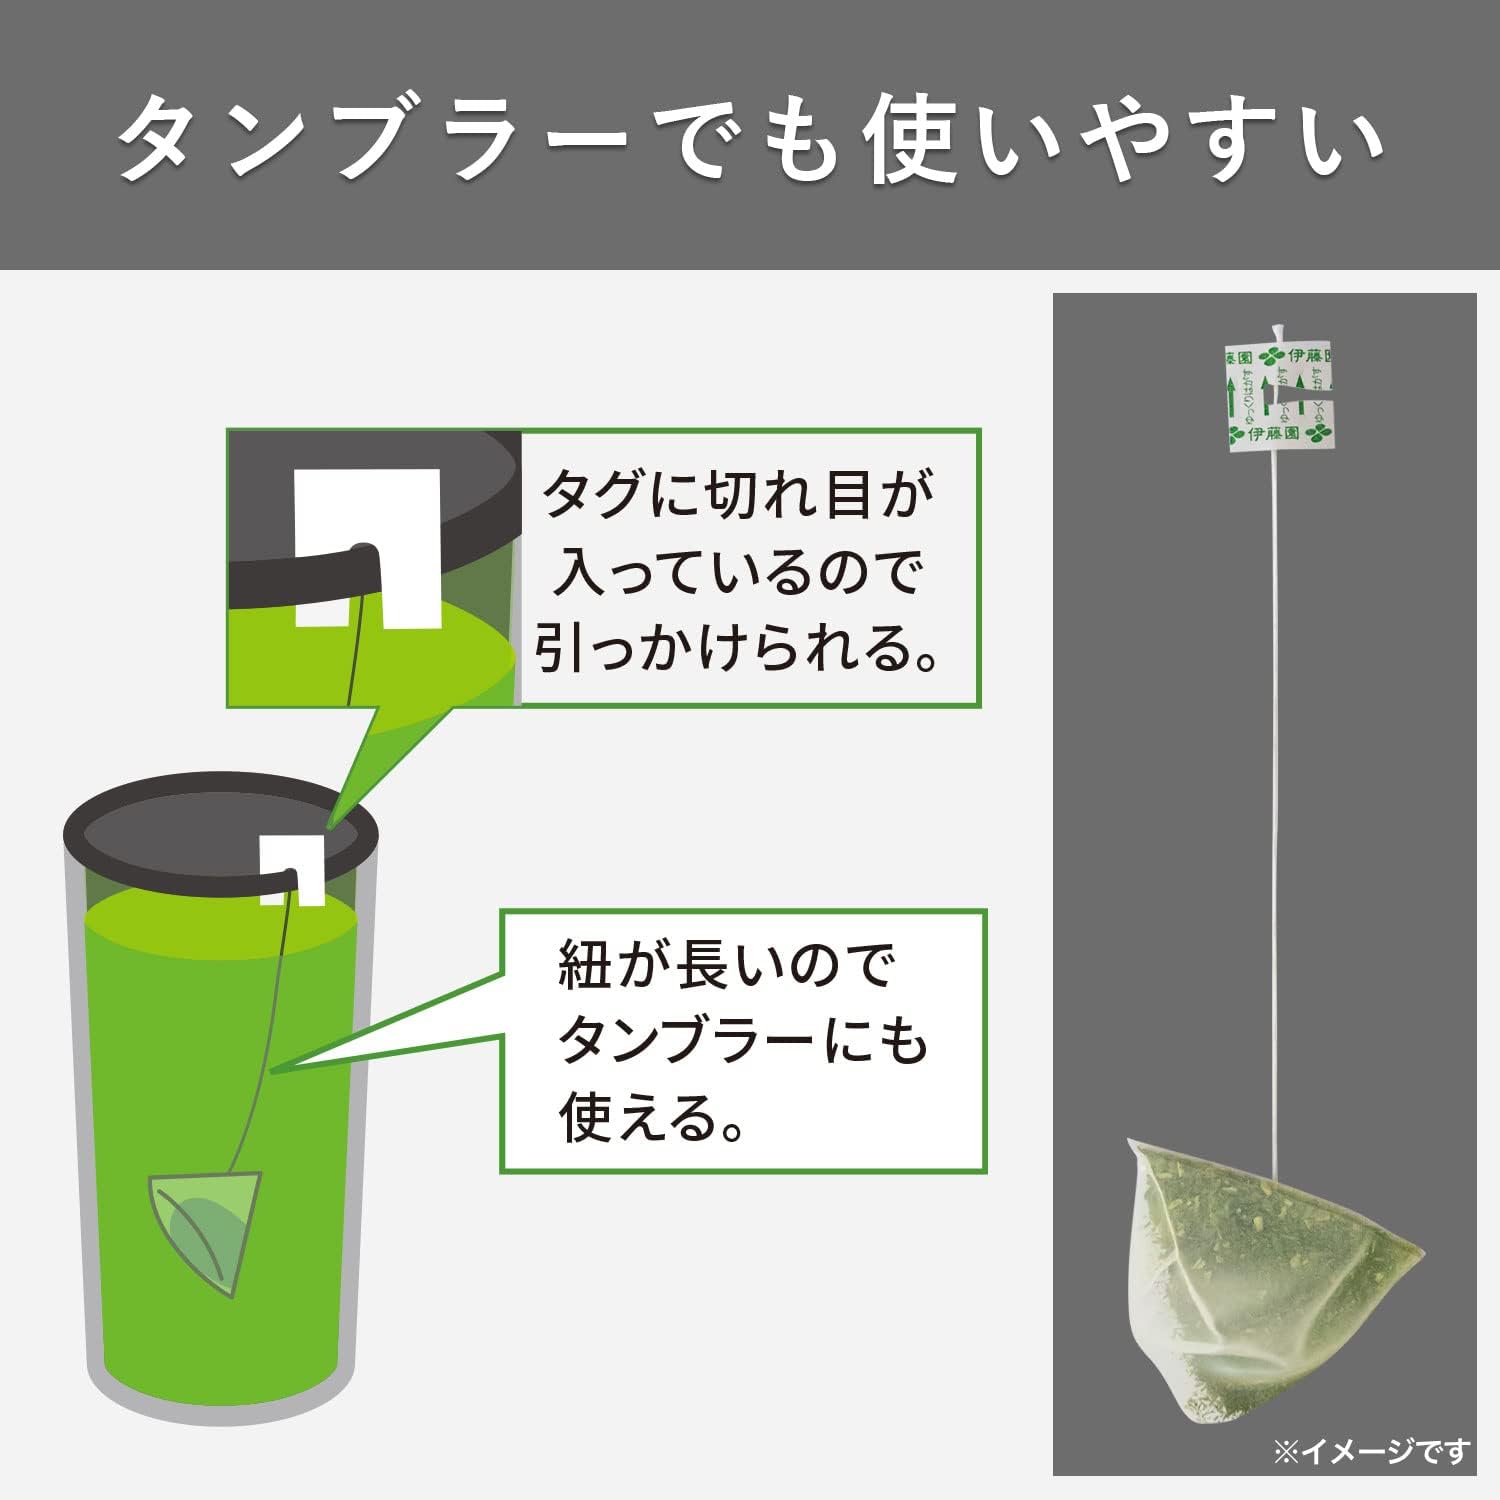 Ito En Premium Bag Roasted Green Tea 50 Packs